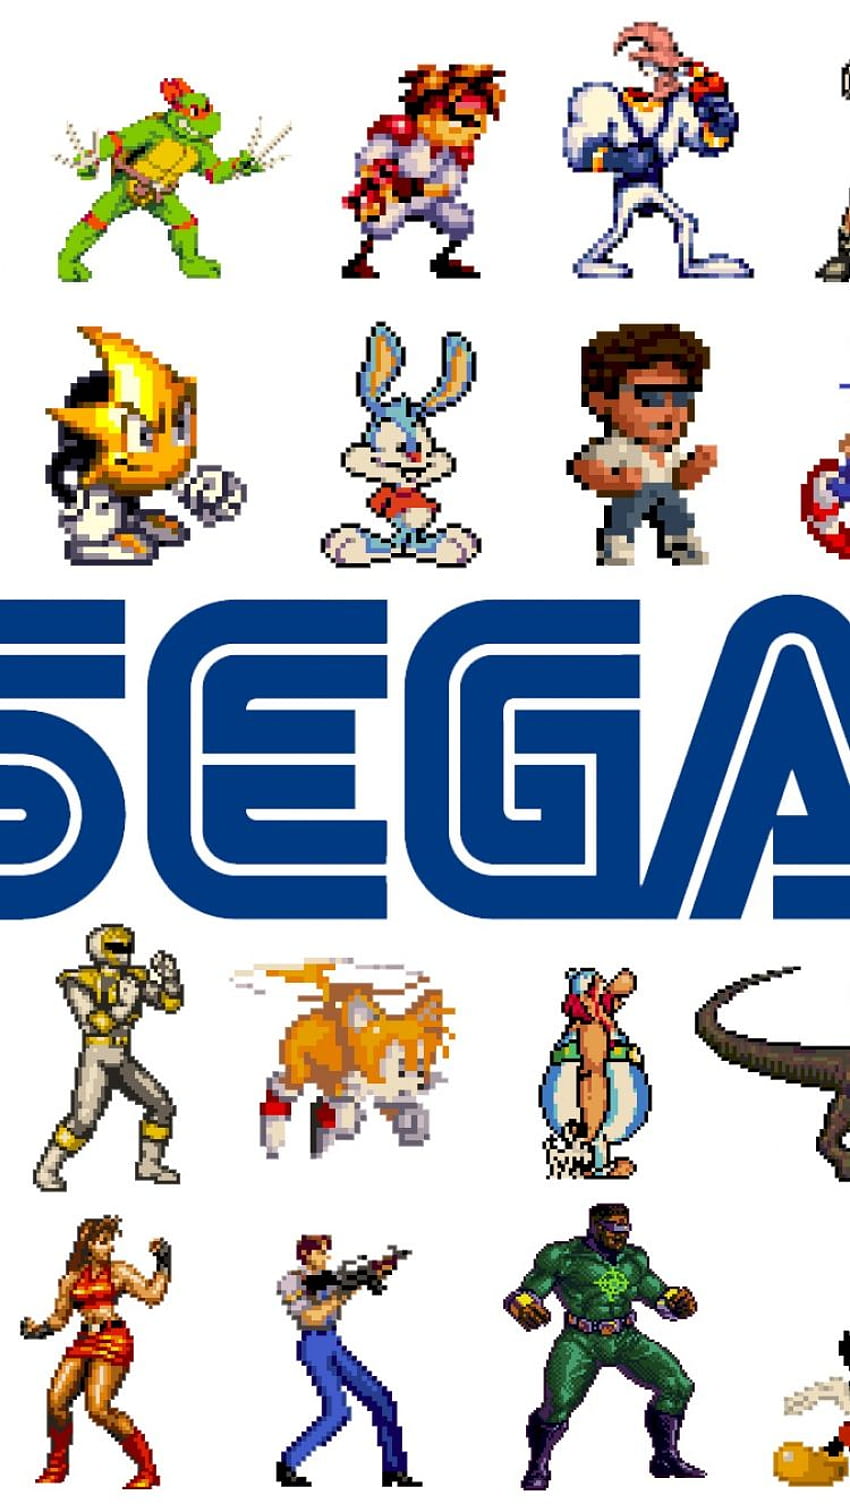 50 Sega Wallpapers  WallpaperSafari